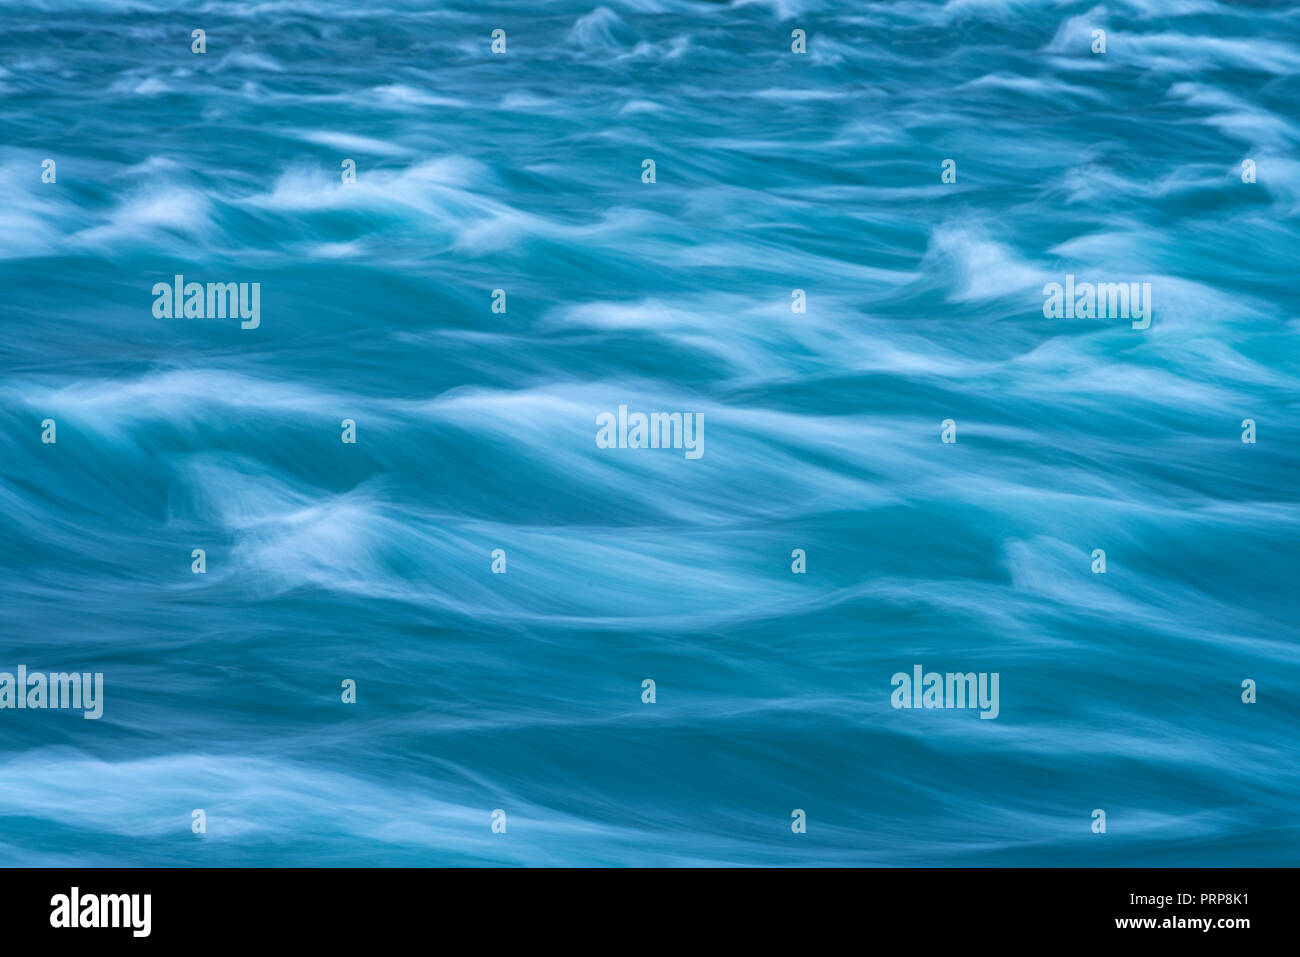 Fließendes Wasser Motion Blur, St. Lawrence River Stockfoto